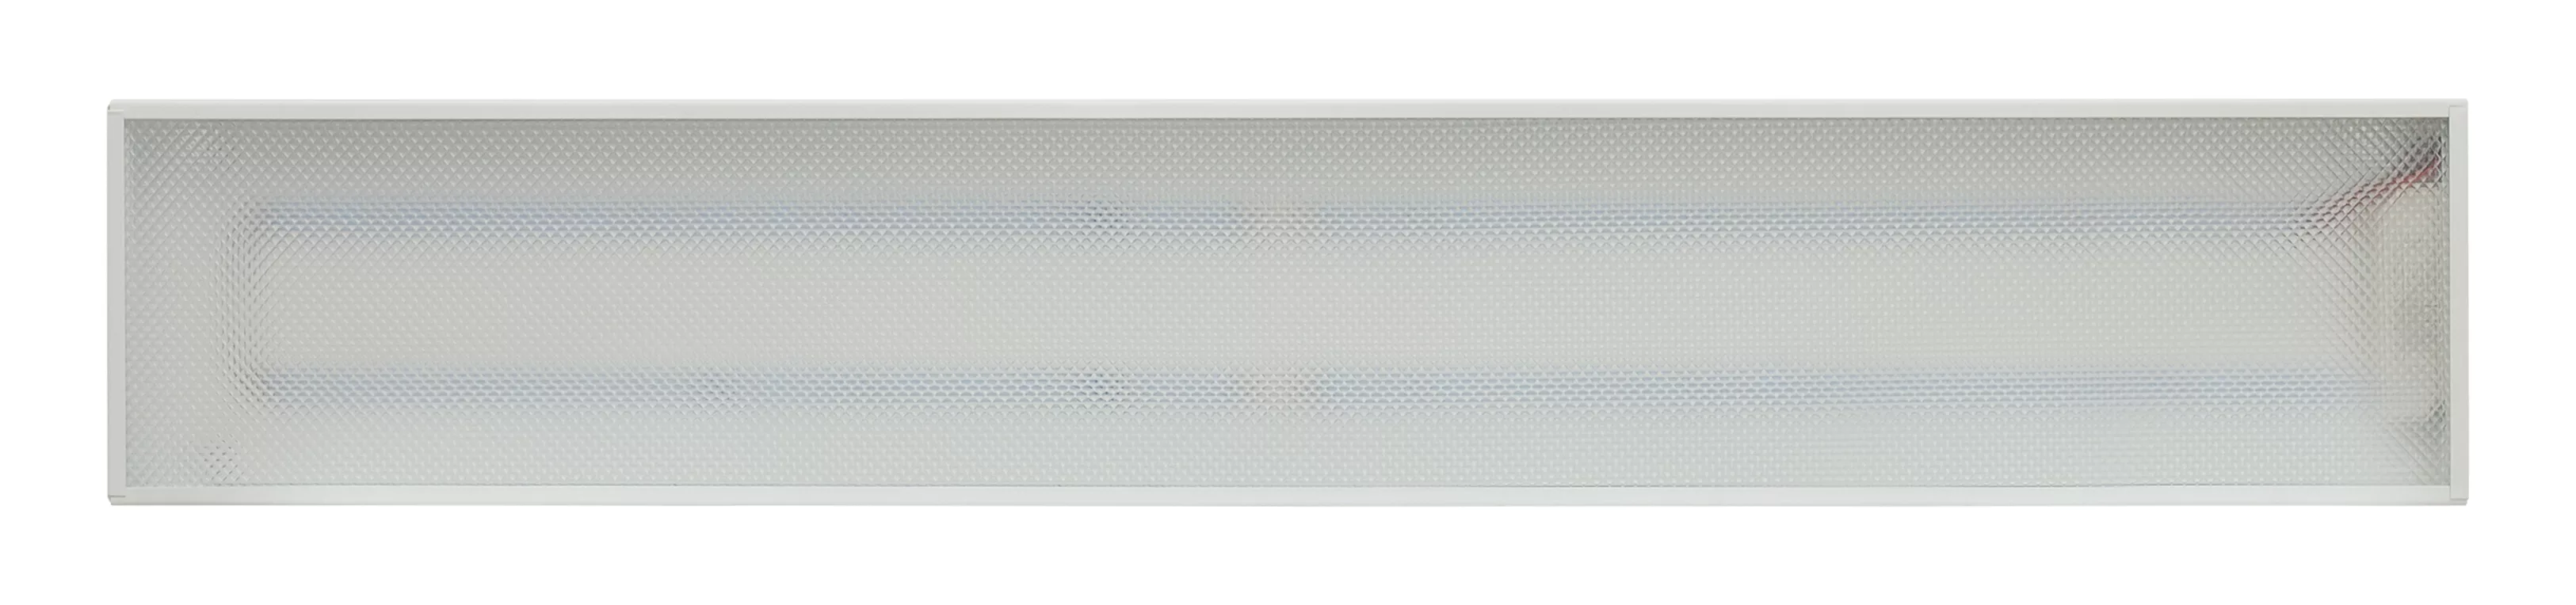 Аварийный светодиодный светильник ПСО 30 колотый лед IP20 600 мм